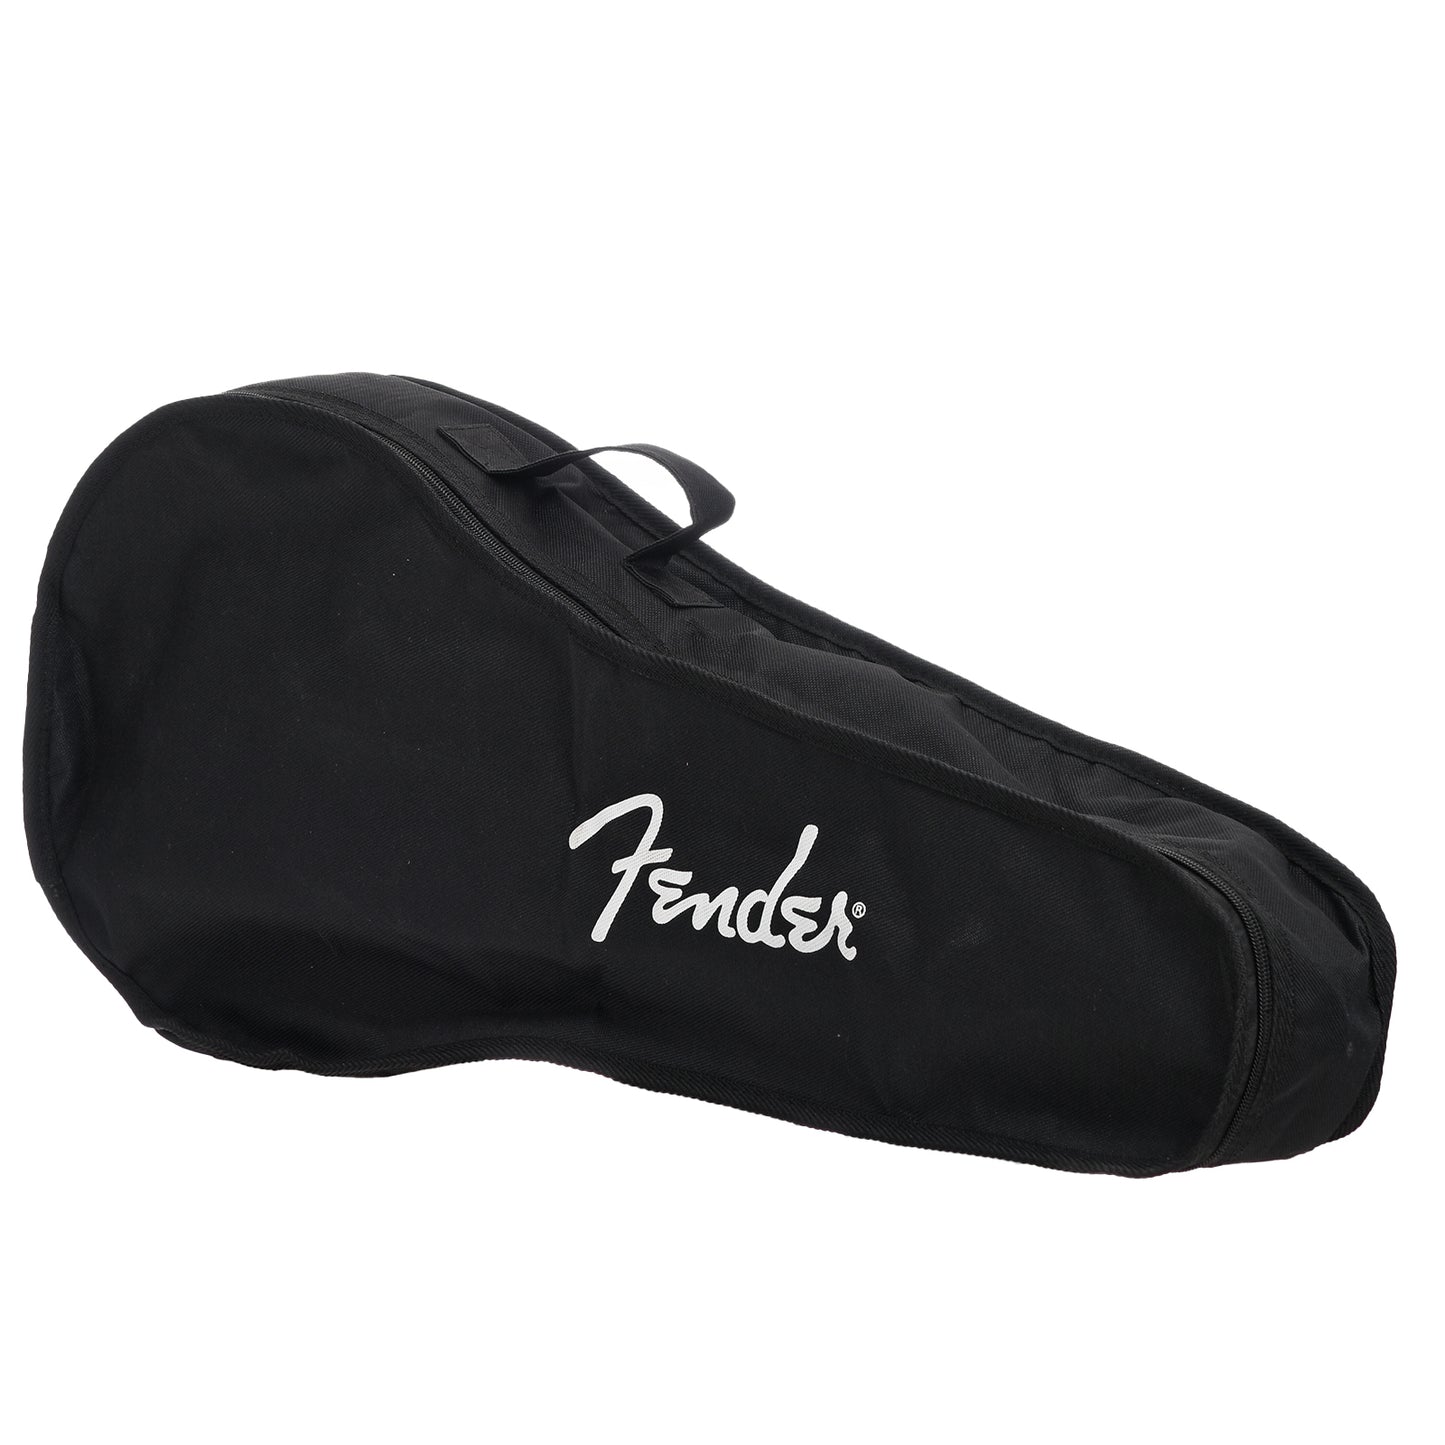 Gig bag for Fender PM-180E Mandolin